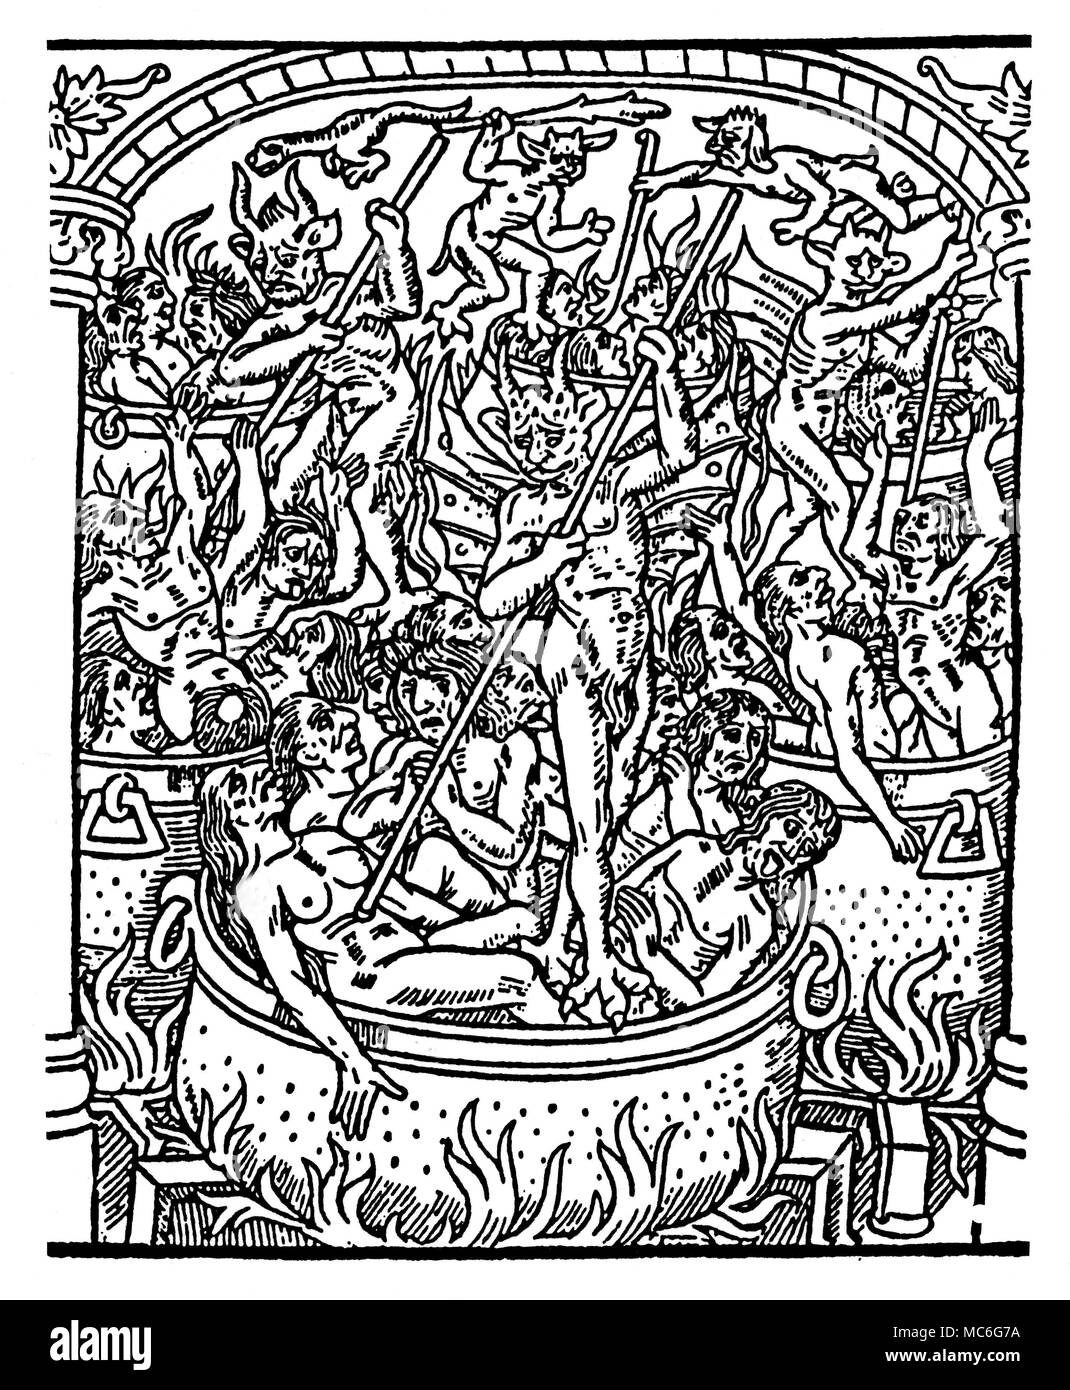 Hölle - Dämonen Sünder werden in großen Kesseln von Dämonen gekocht. Von Le Grant Kalendrier & Kompost des Bergiers avecq leur Astrologie, circa 1500. Stockfoto